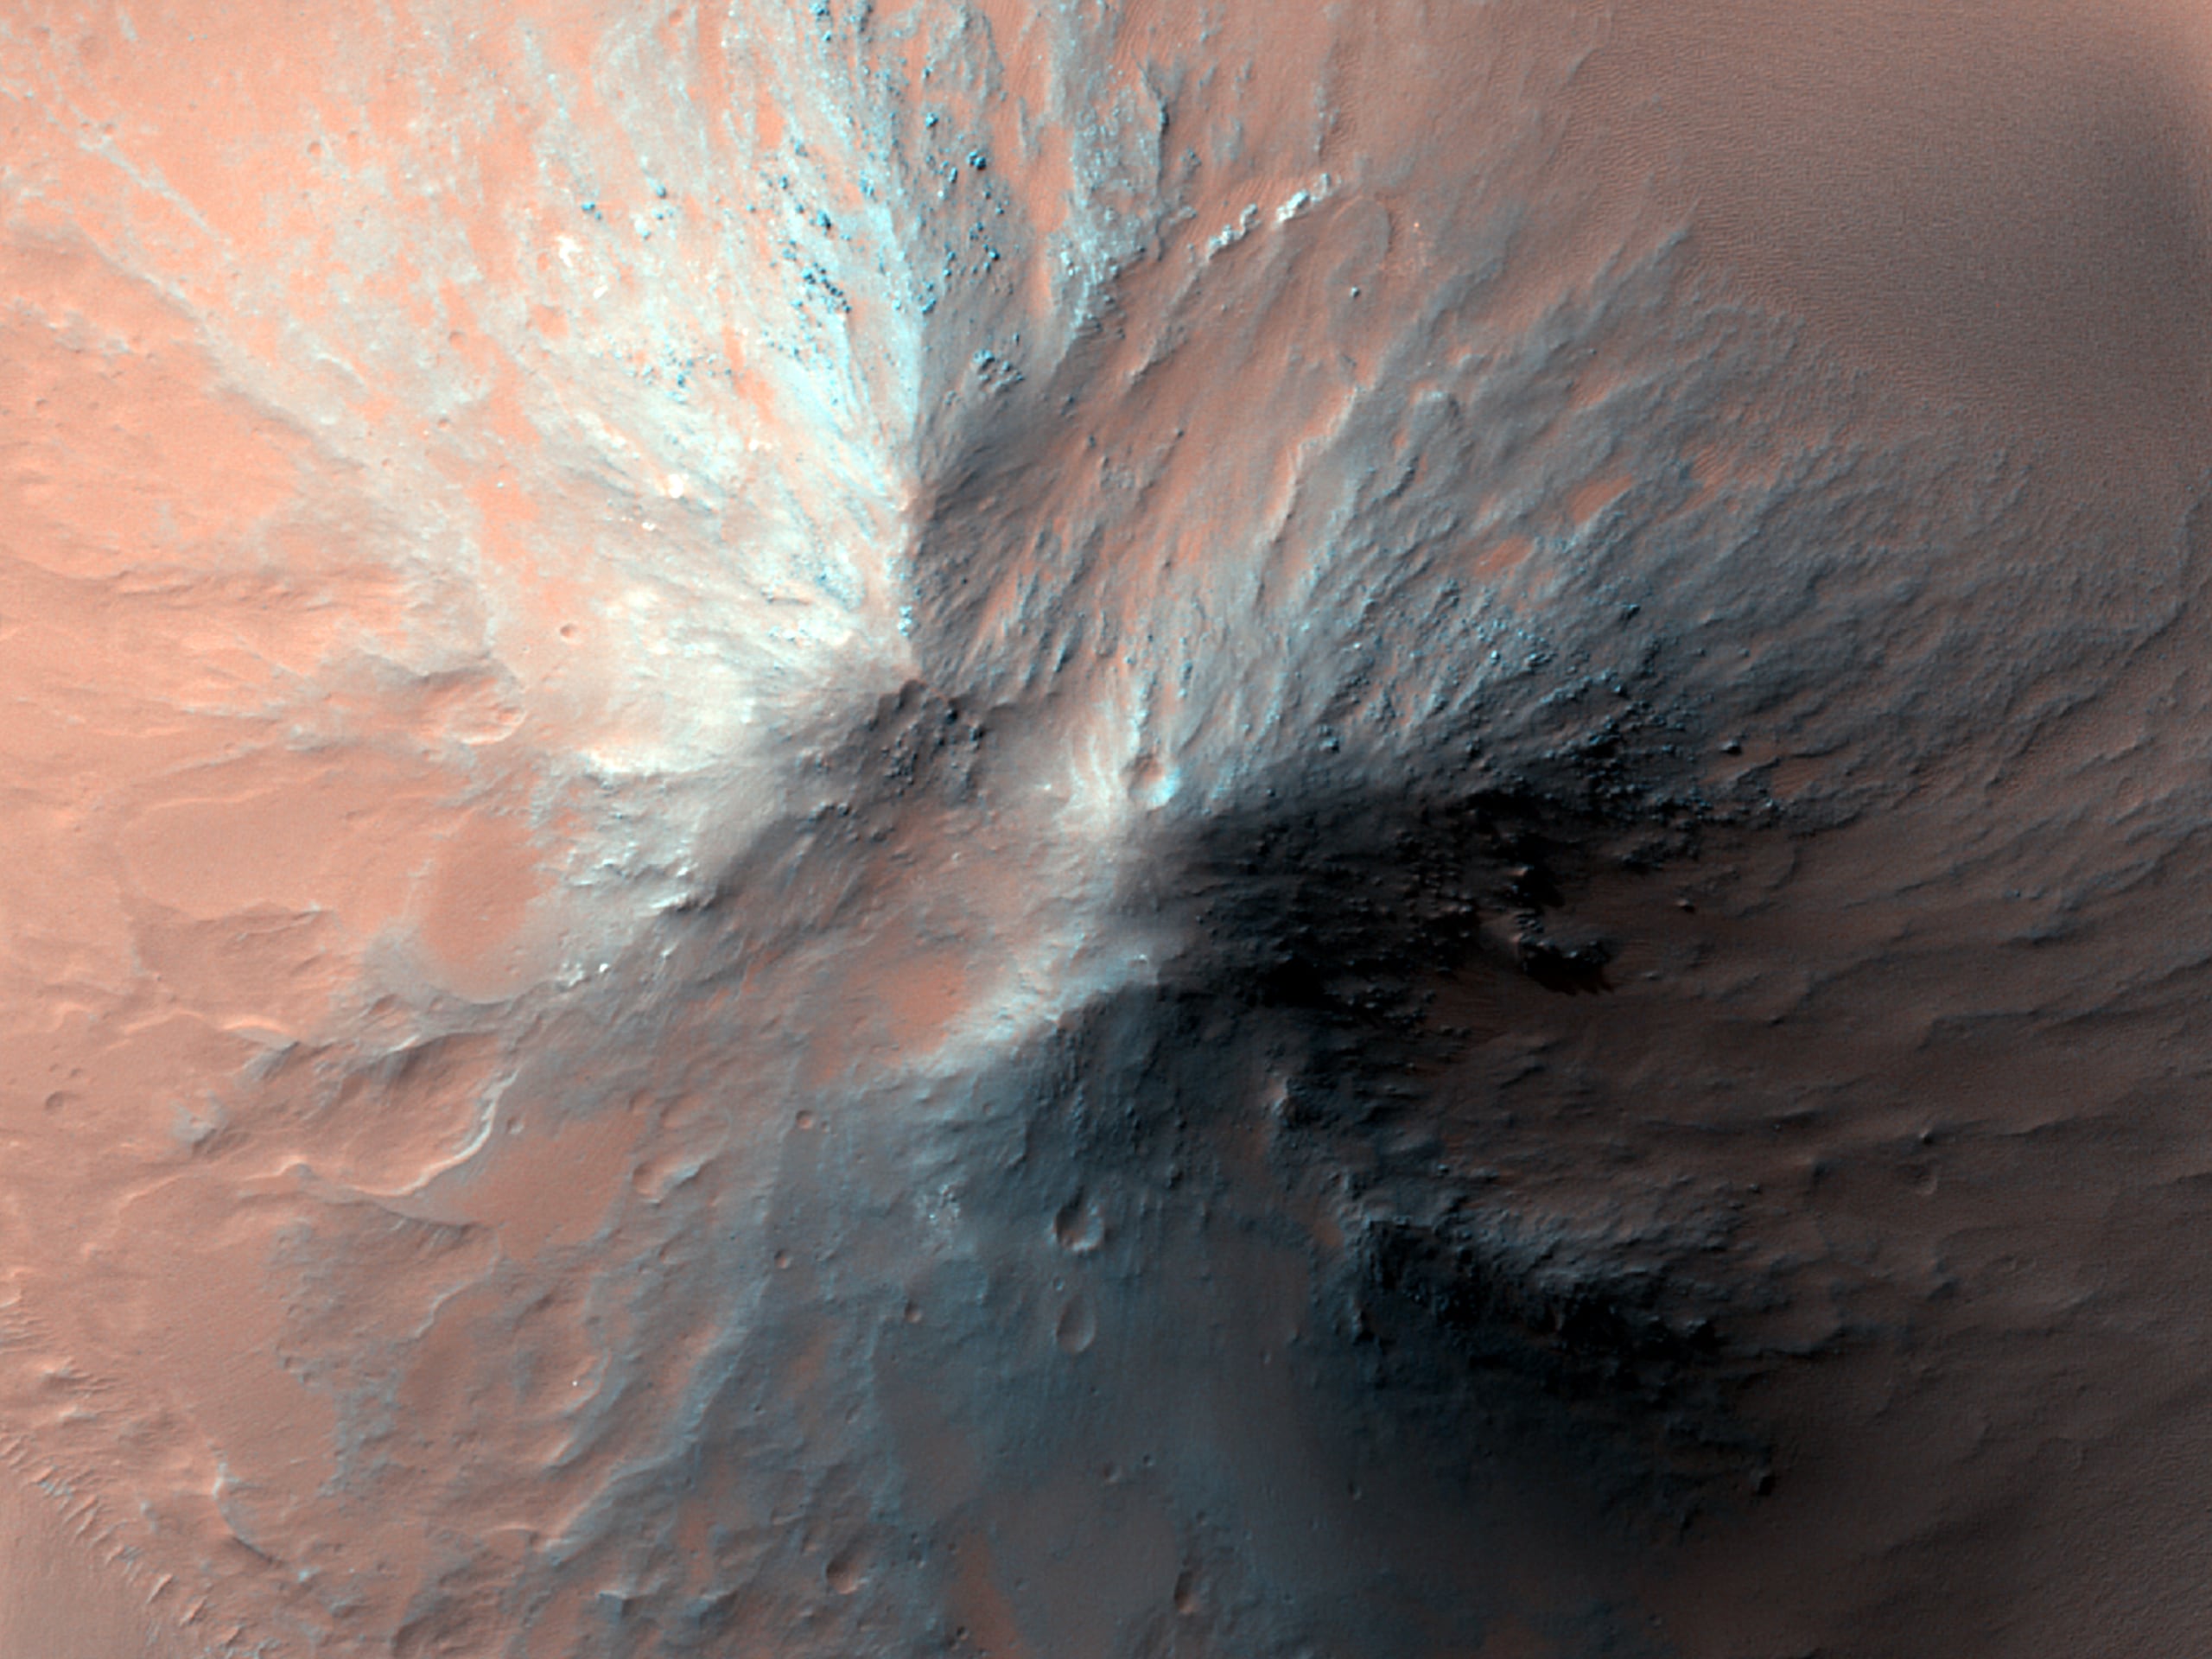 Capri Chasma